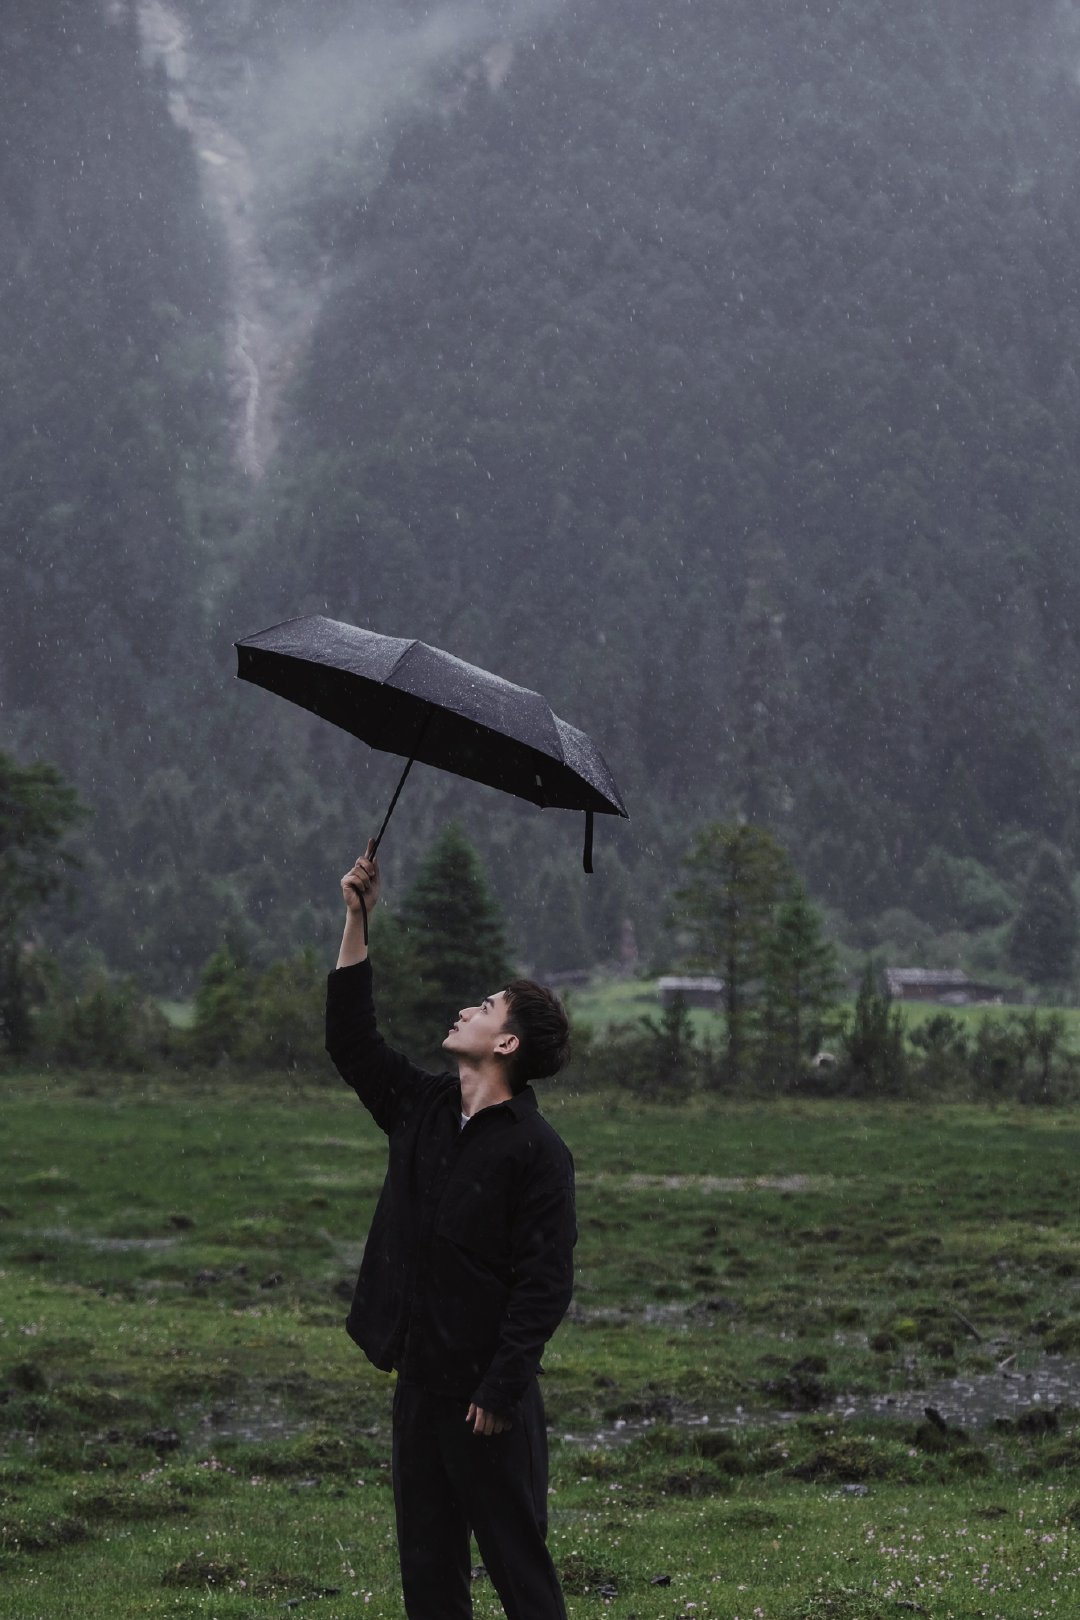 雨中打傘的男人圖片素材-JPG圖片尺寸4309 × 4135px-高清圖案501441122-zh.lovepik.com